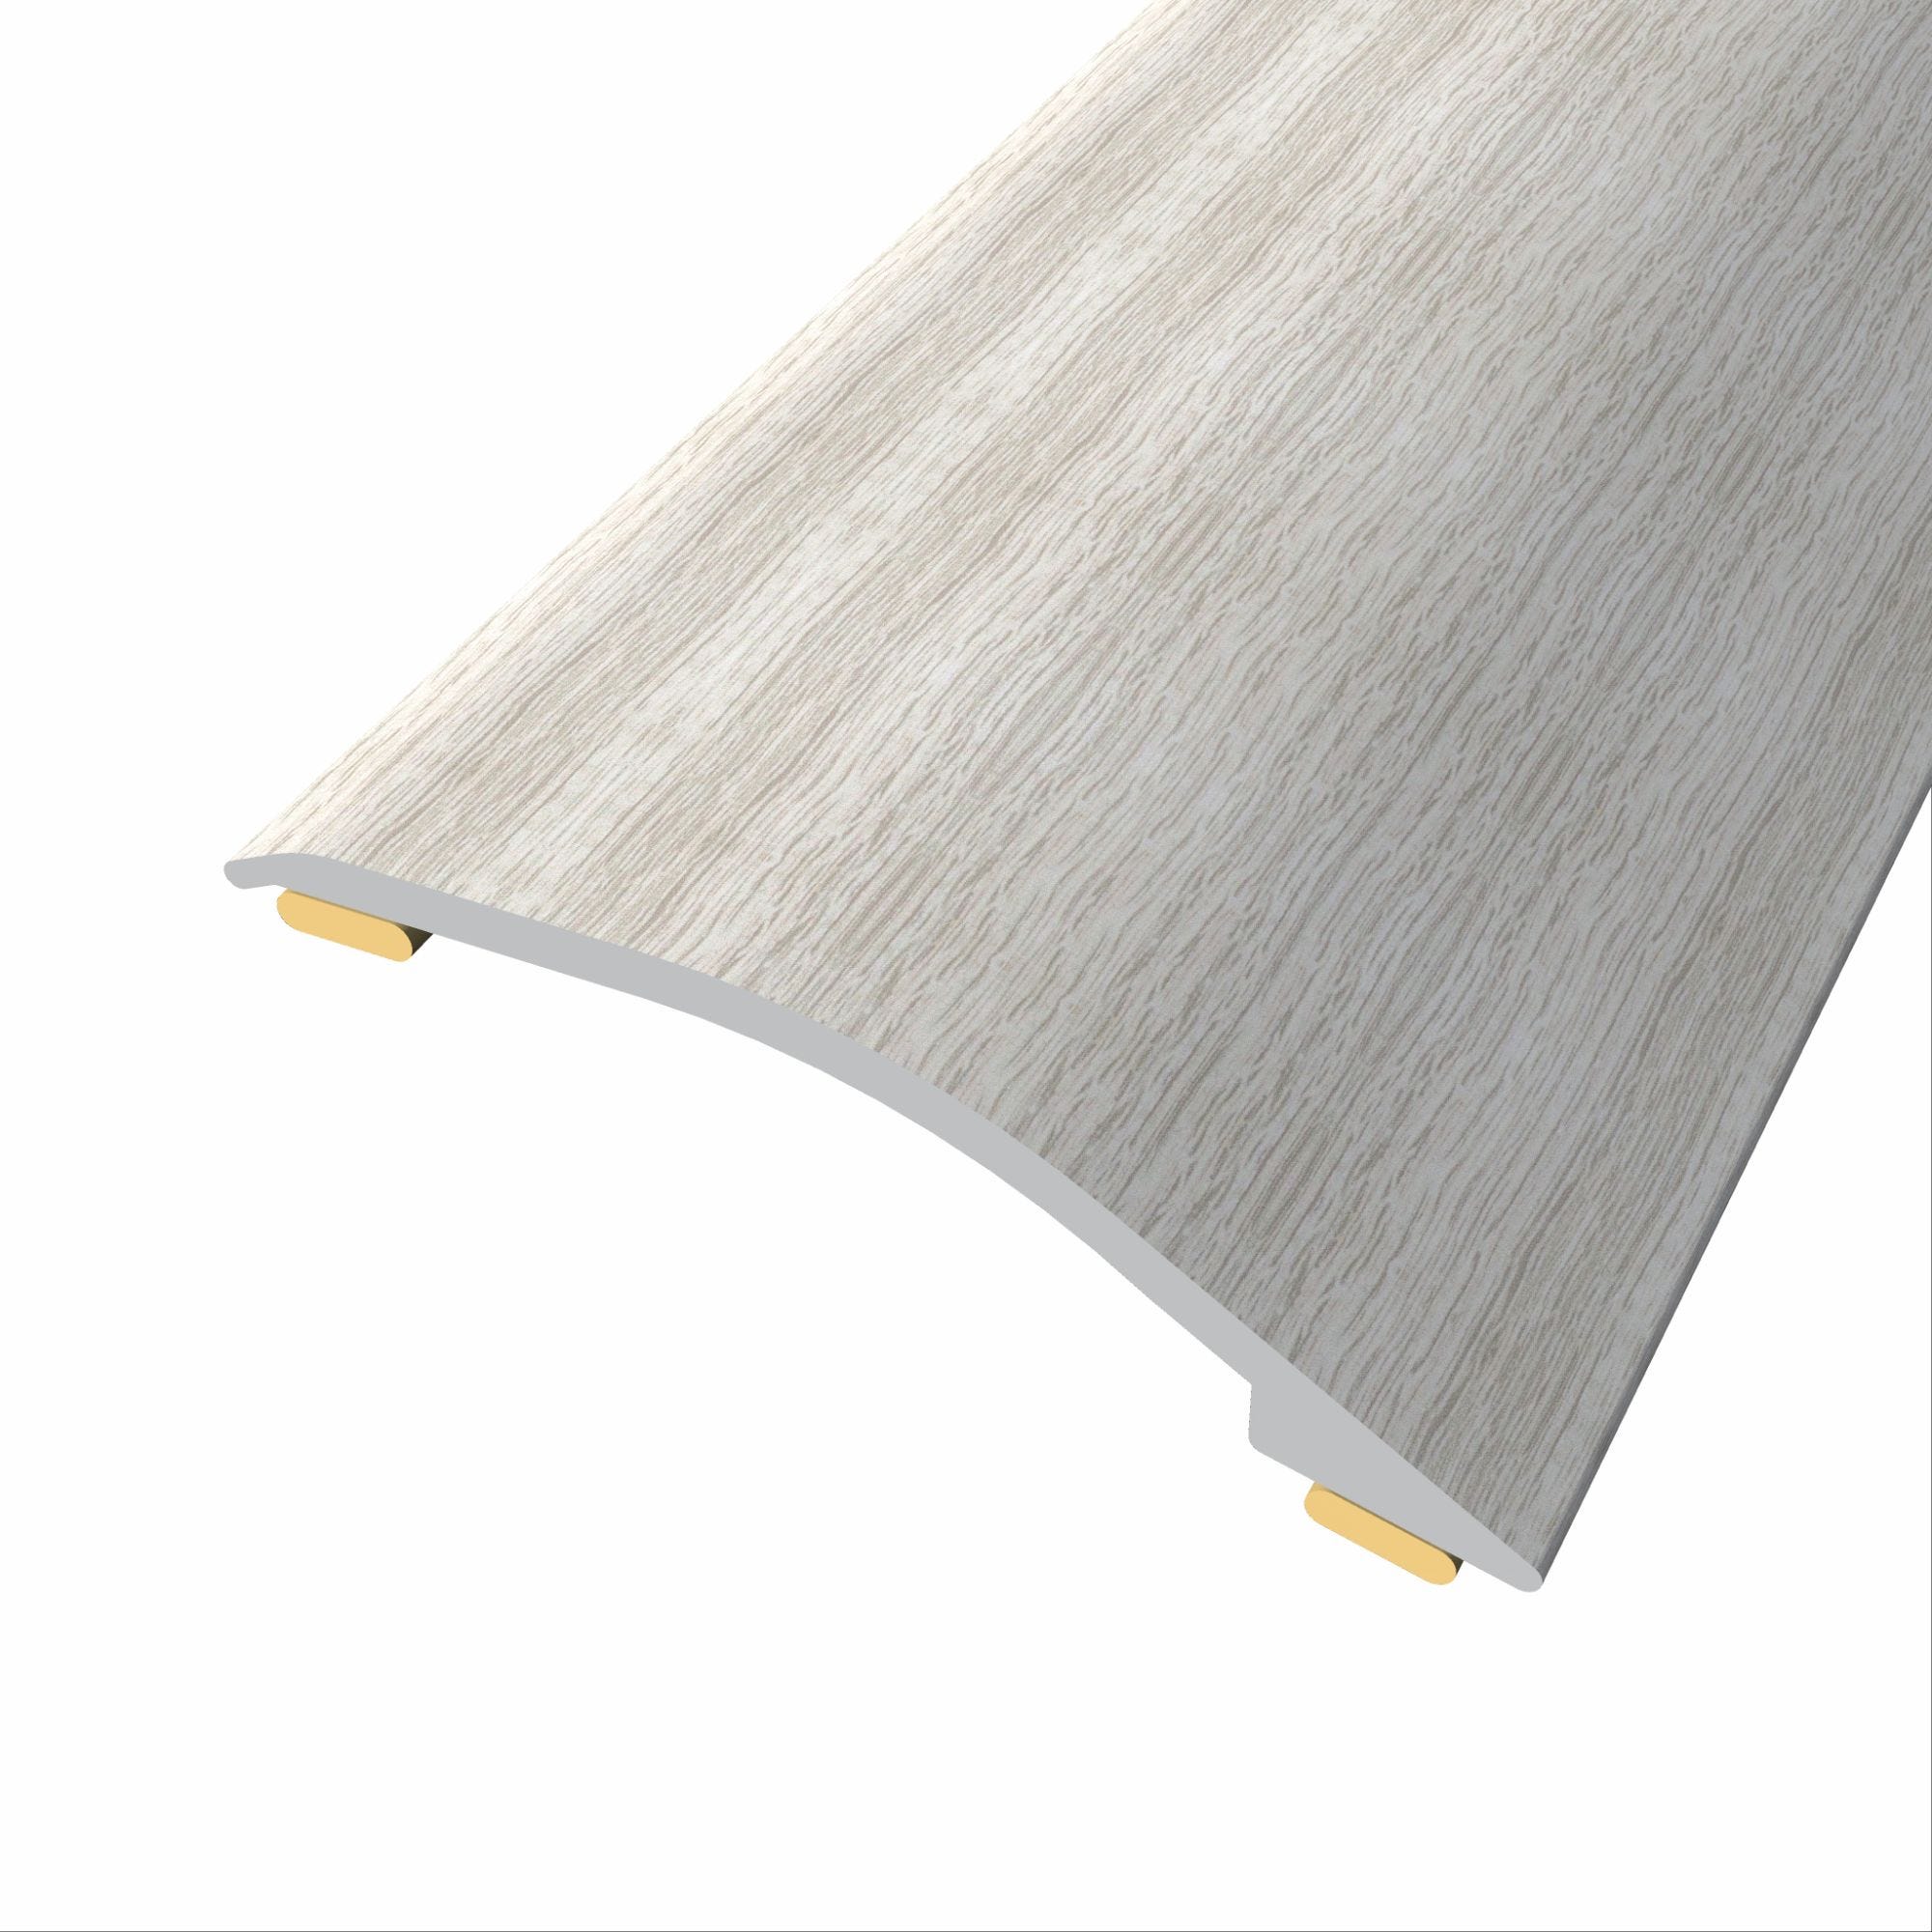 barre de seuil adhésive différence niveau aluminium coloris (73) Chêne blanc gris Long 90 cm larg 3,8cm Ht 1,2cm 1